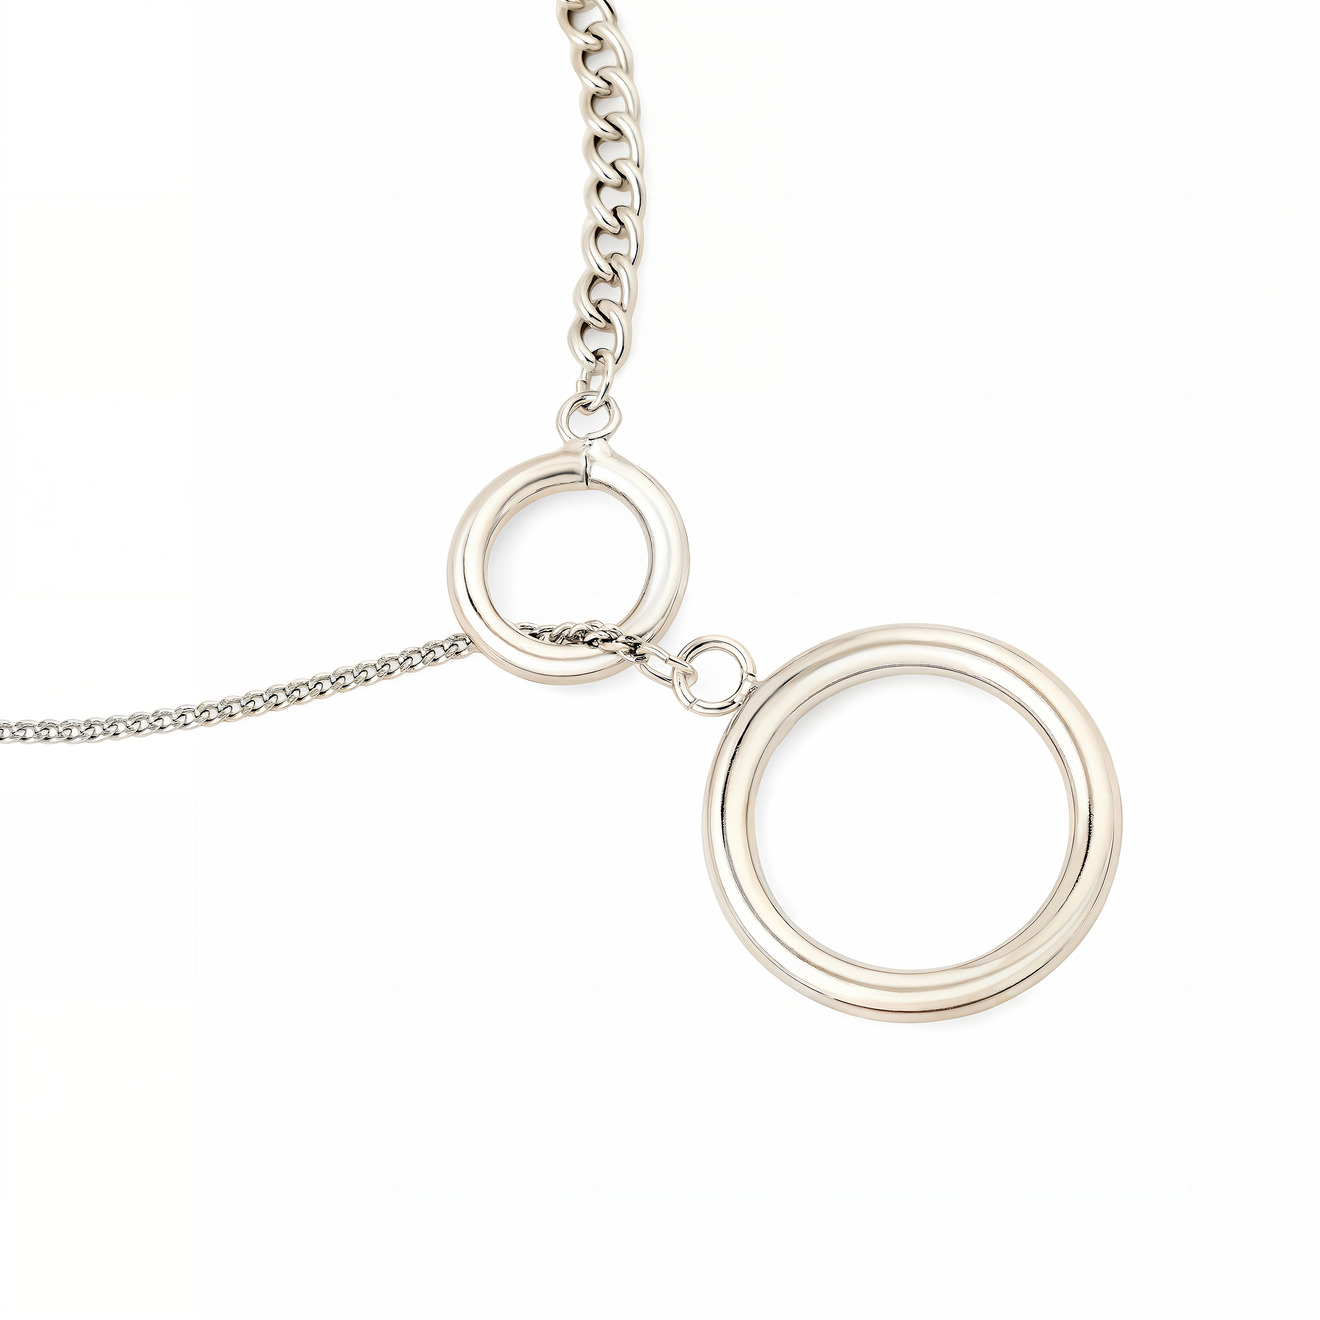 Free Form Jewelry Браслет серебристый с двумя кольцами большим и малым цена и фото